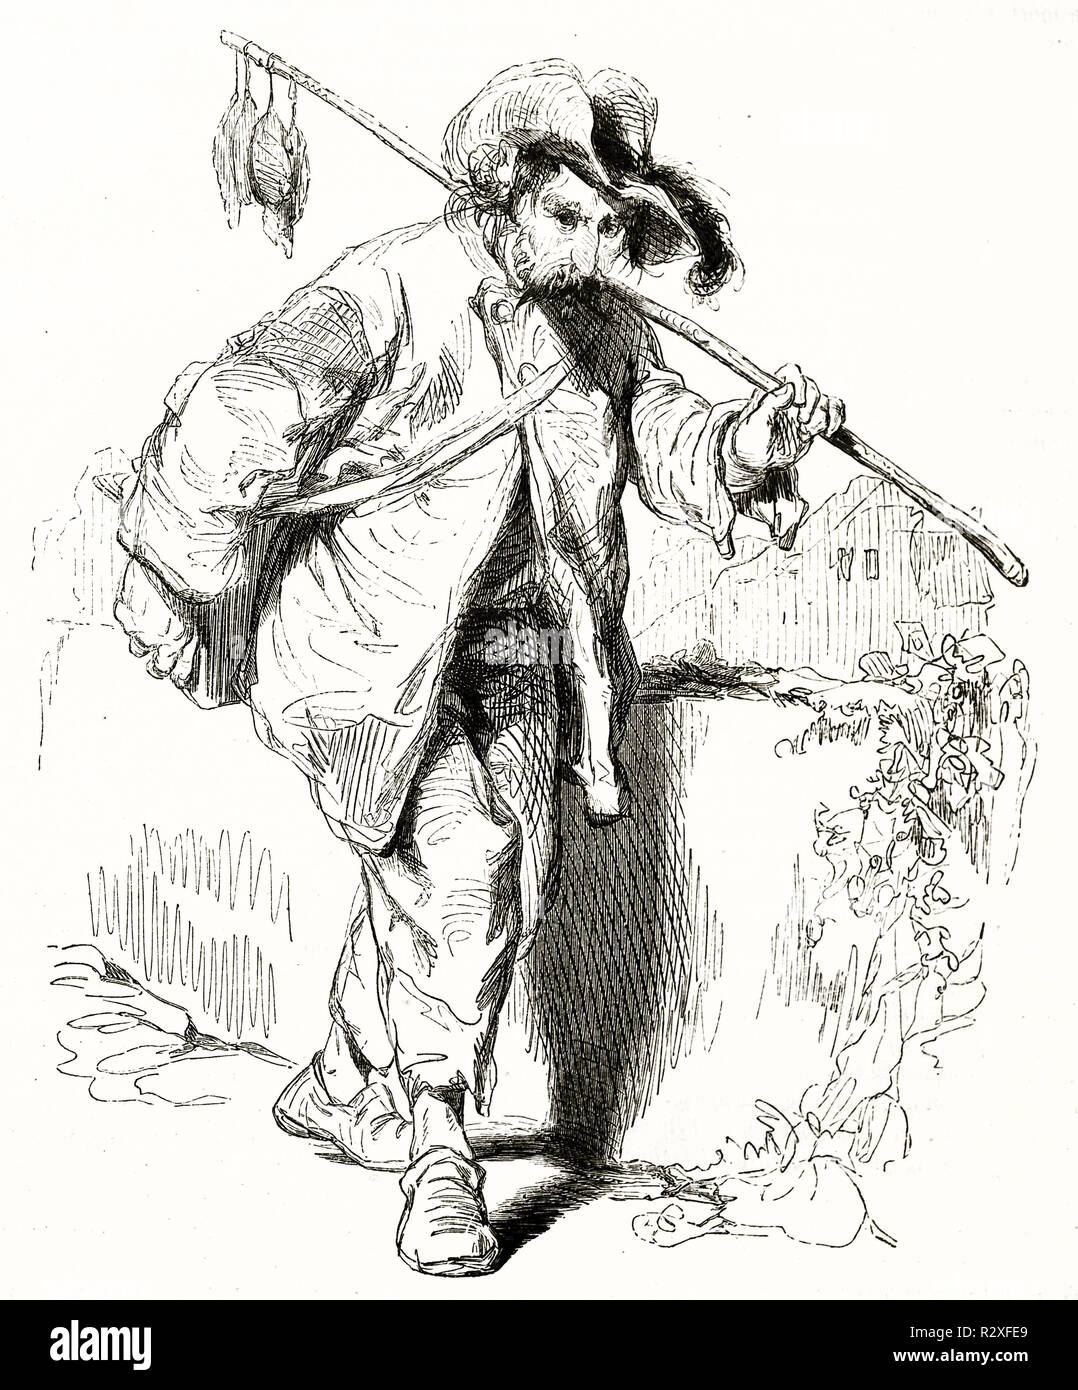 Vieille illustration représentant un vendeur de poison à rat. Par Gavarni, publ. sur Magasin Pittoresque, Paris, 1846 Banque D'Images